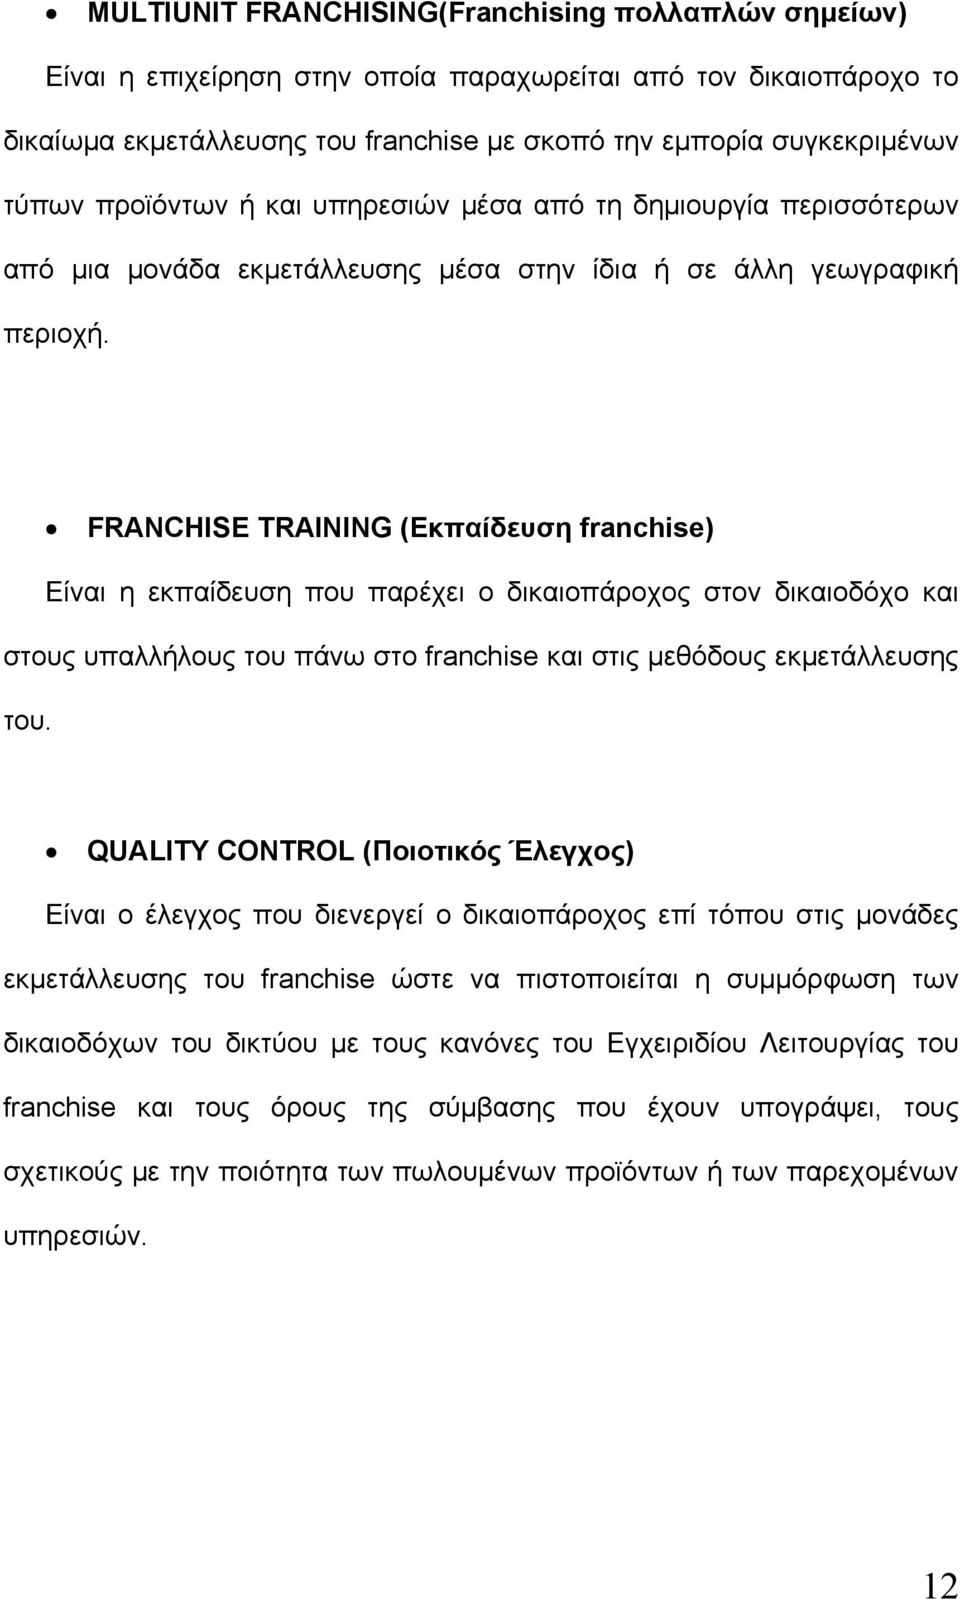 FRANCHISE TRAINING (Εκπαίδευση franchise) Είναι η εκπαίδευση που παρέχει ο δικαιοπάροχος στον δικαιοδόχο και στους υπαλλήλους του πάνω στο franchise και στις μεθόδους εκμετάλλευσης του.